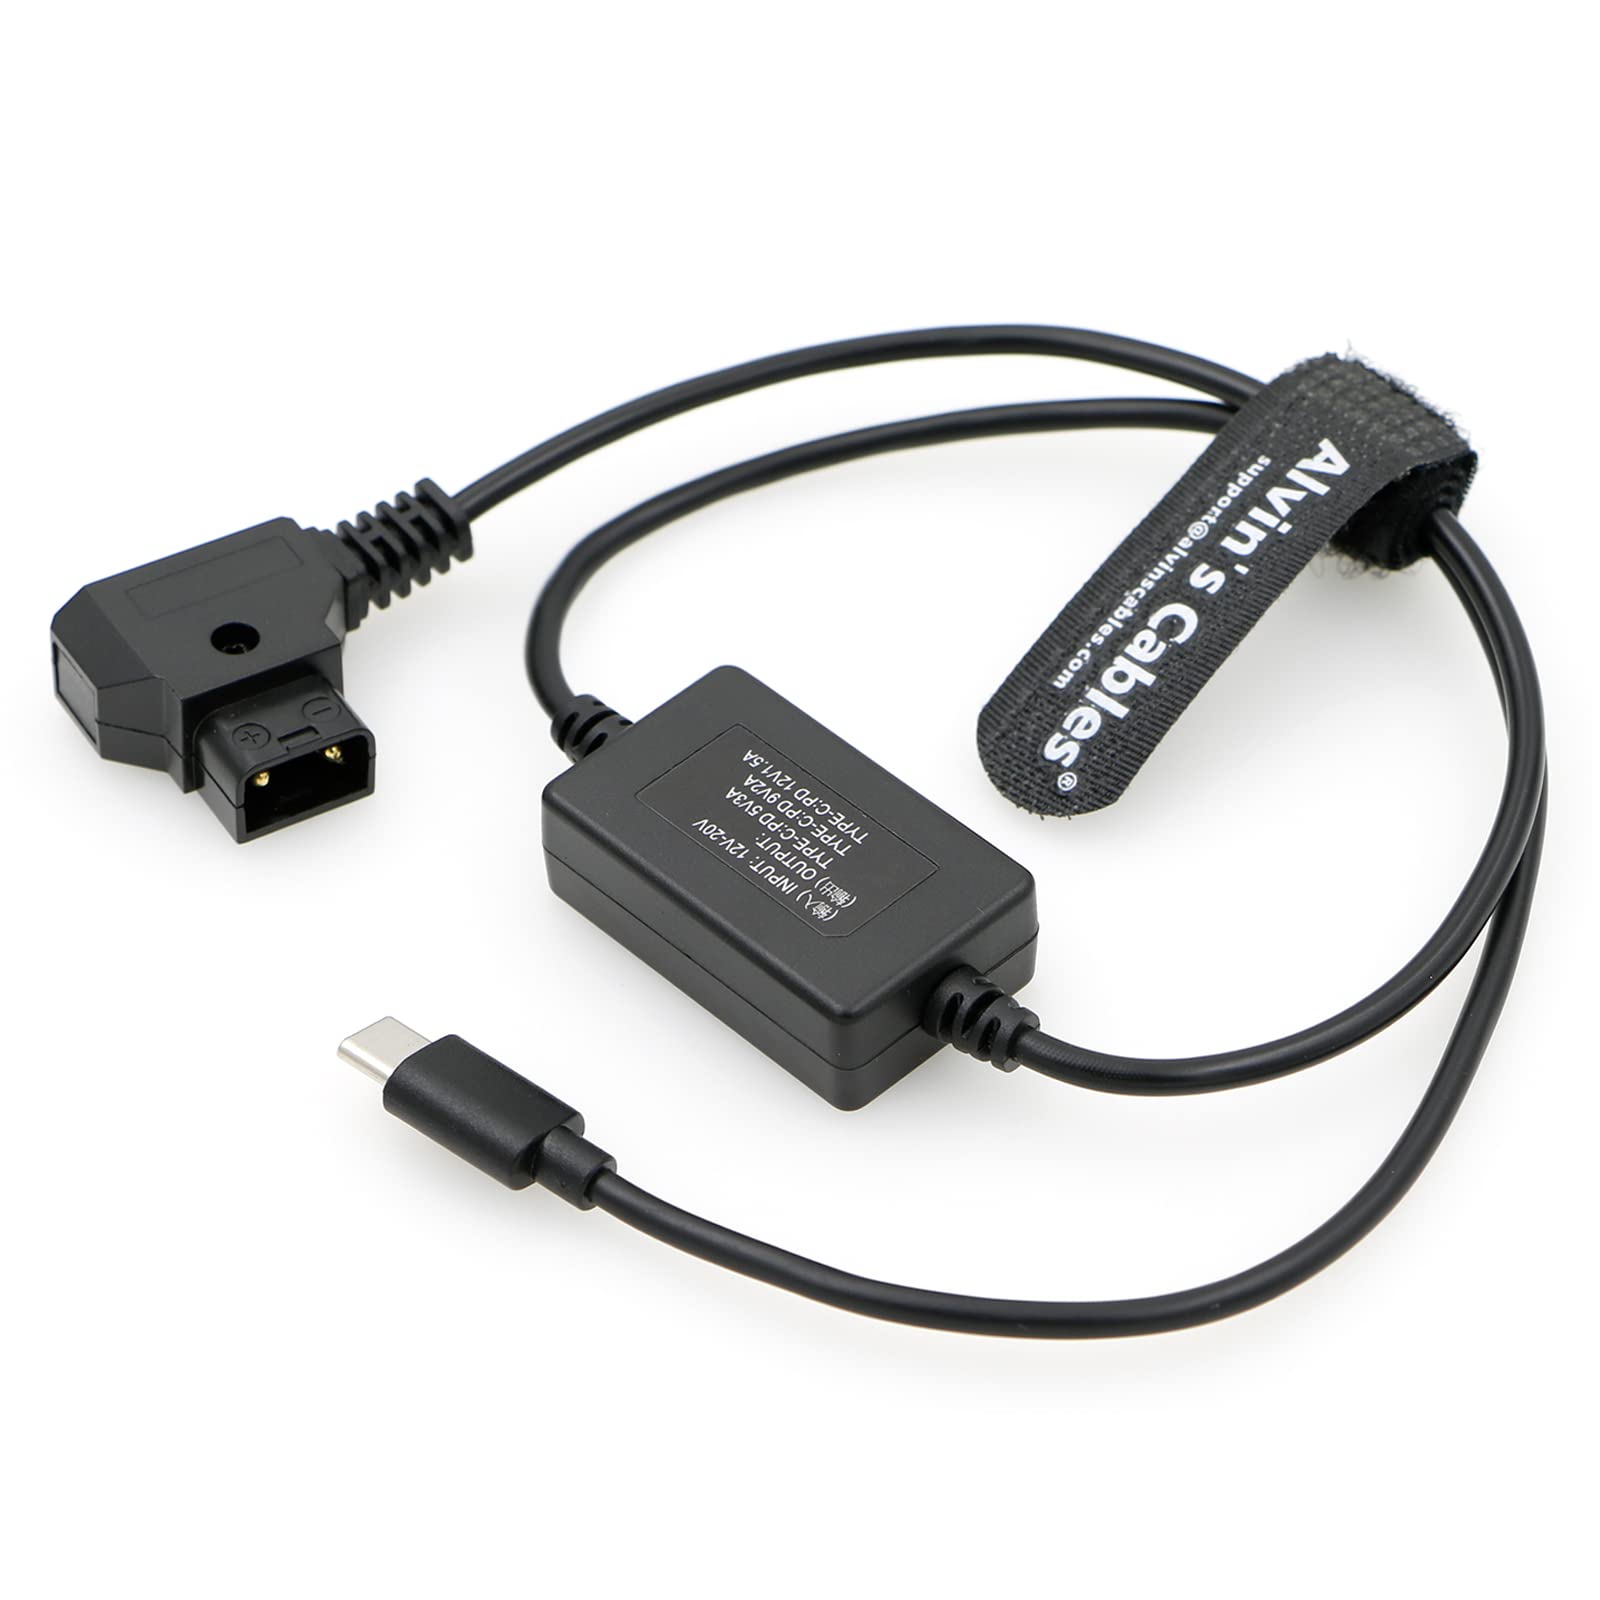 DC Converter 12V to 5V USB Lead - Tracer Power